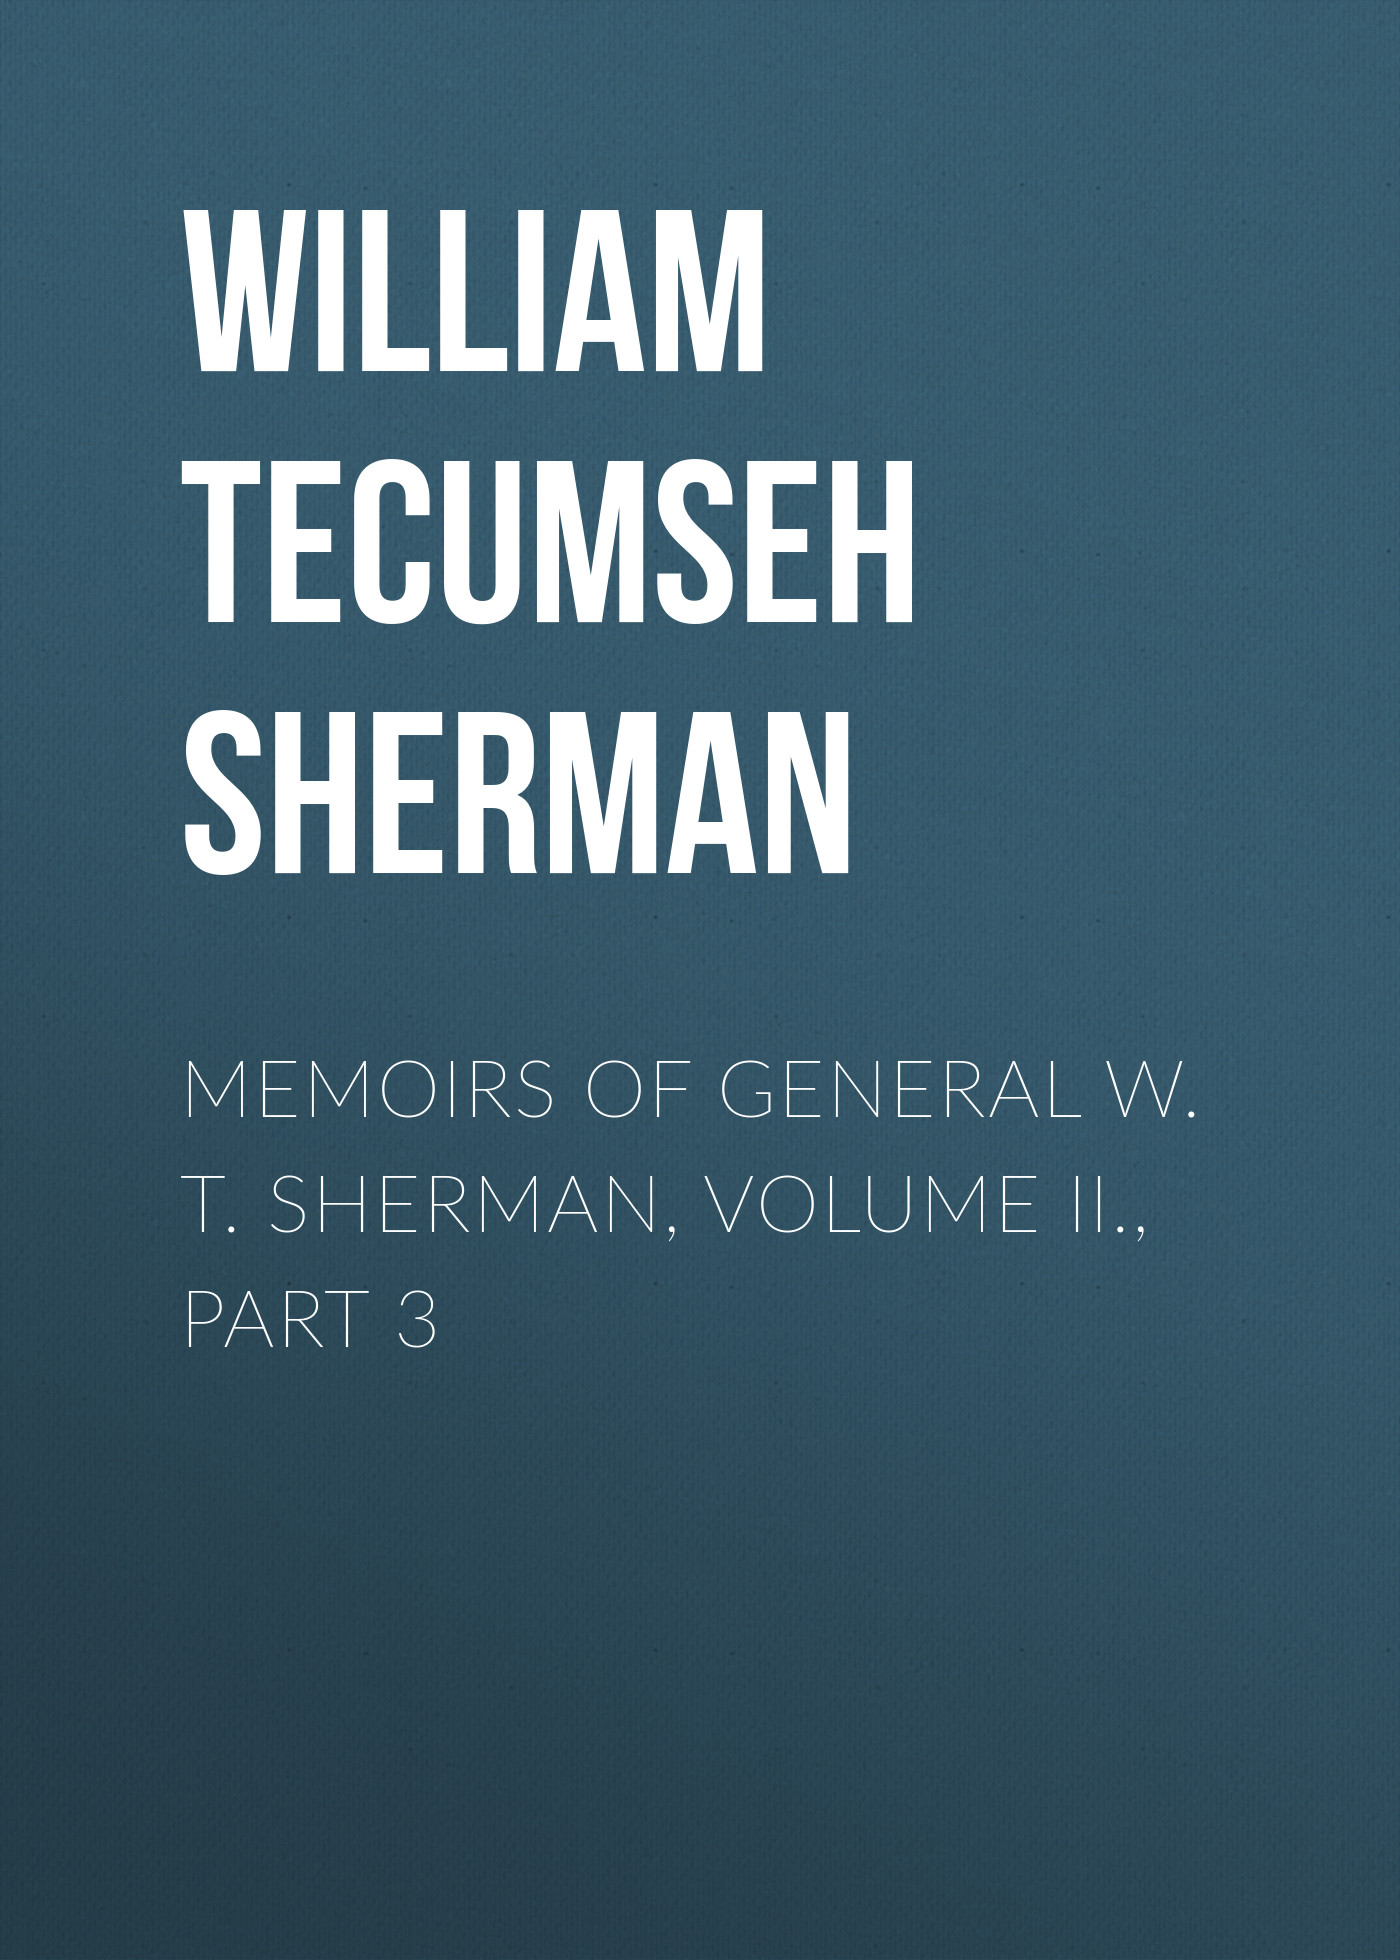 Книга Memoirs of General W. T. Sherman, Volume II., Part 3 из серии , созданная William Tecumseh Sherman, может относится к жанру Биографии и Мемуары, История, Зарубежная образовательная литература, Зарубежная старинная литература, Зарубежная классика. Стоимость электронной книги Memoirs of General W. T. Sherman, Volume II., Part 3 с идентификатором 35007033 составляет 0 руб.